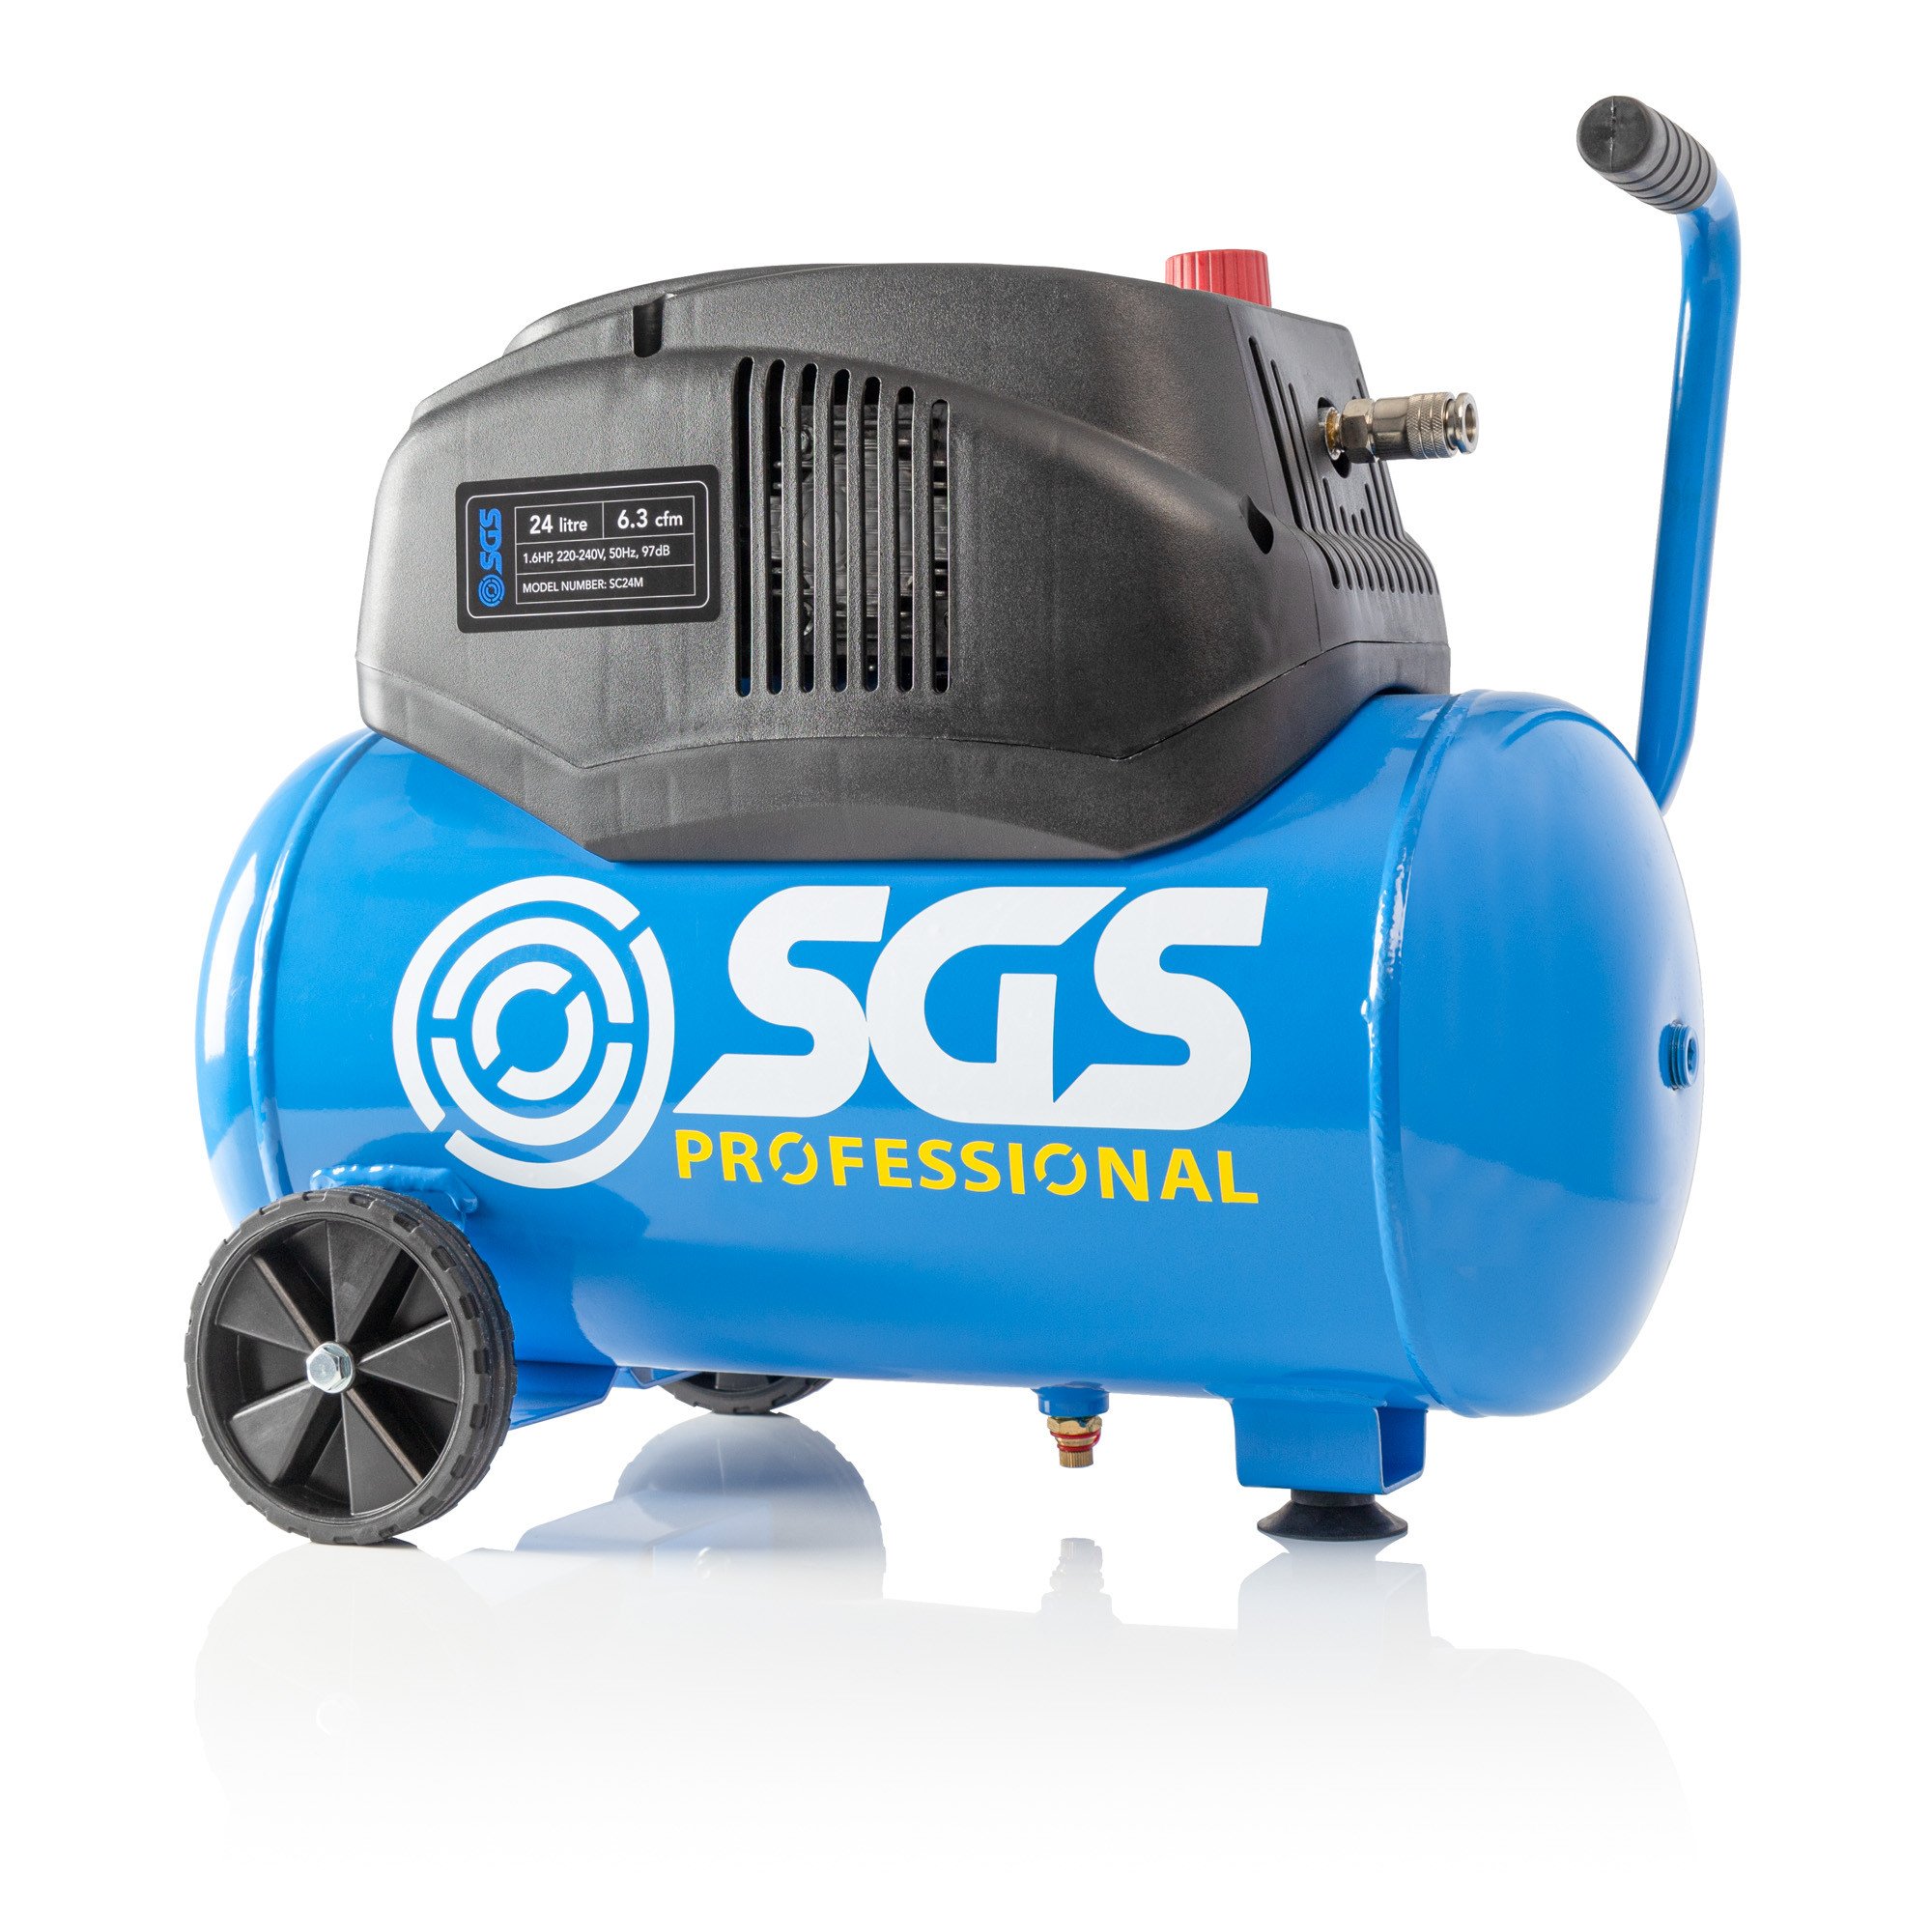 SGS 24升缺油空气压缩机- 6.3 CFM, 1.6 HP